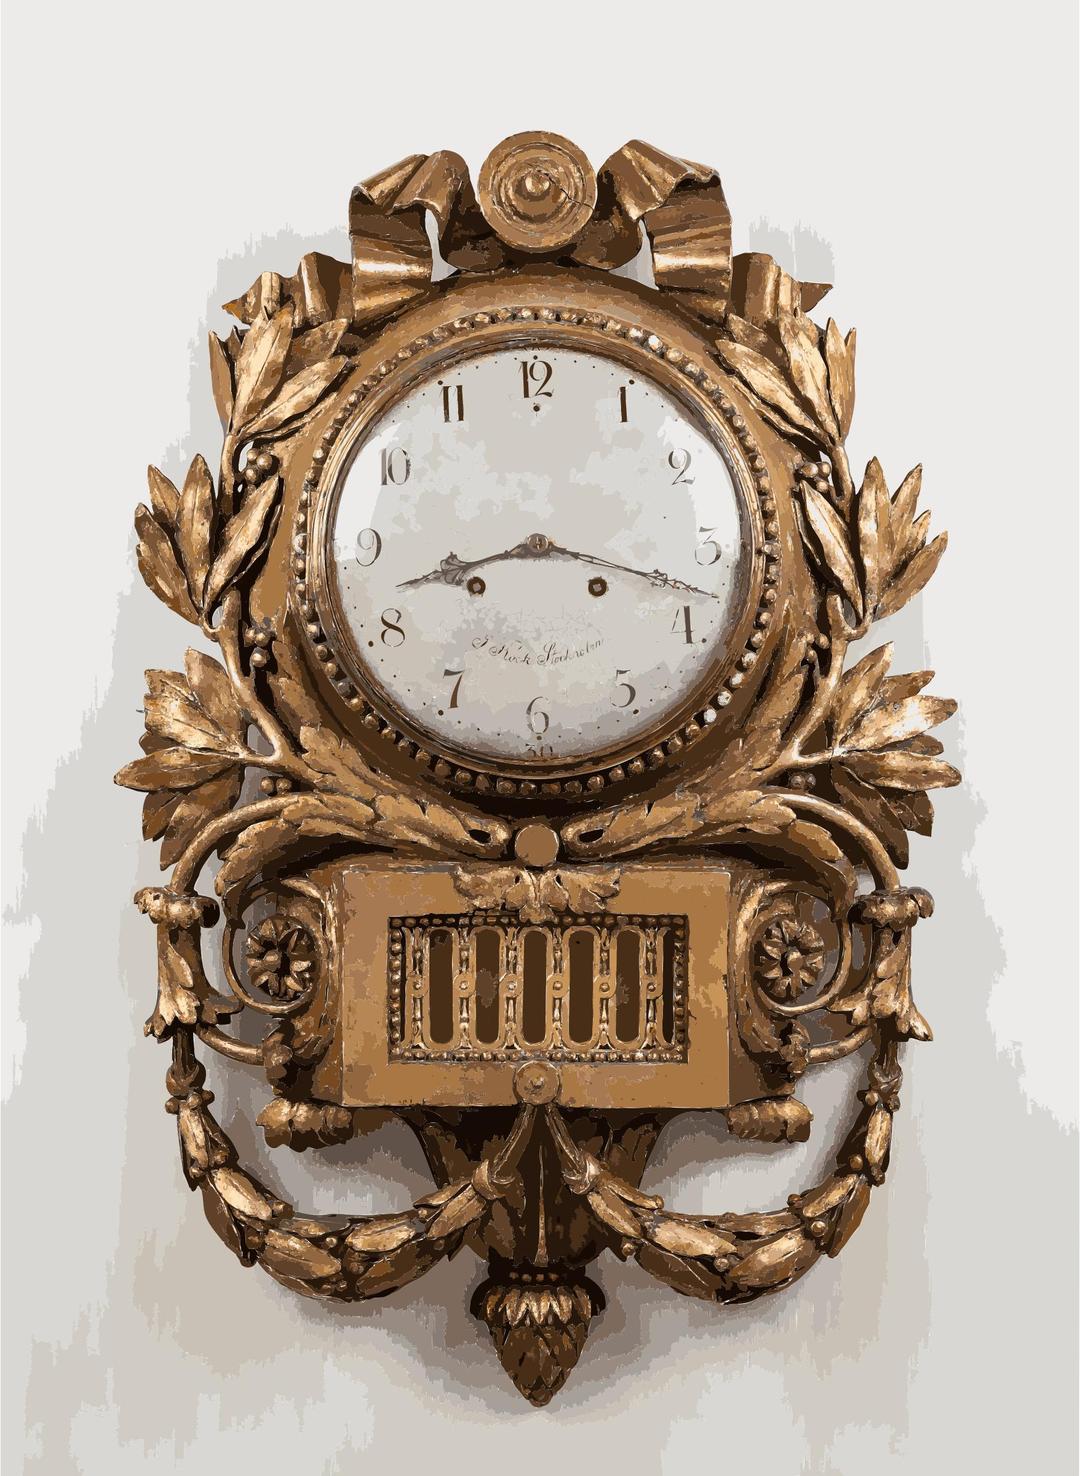 Pendulum clock by Jacob Kock, antique furniture photography, IMG 0931 edit png transparent